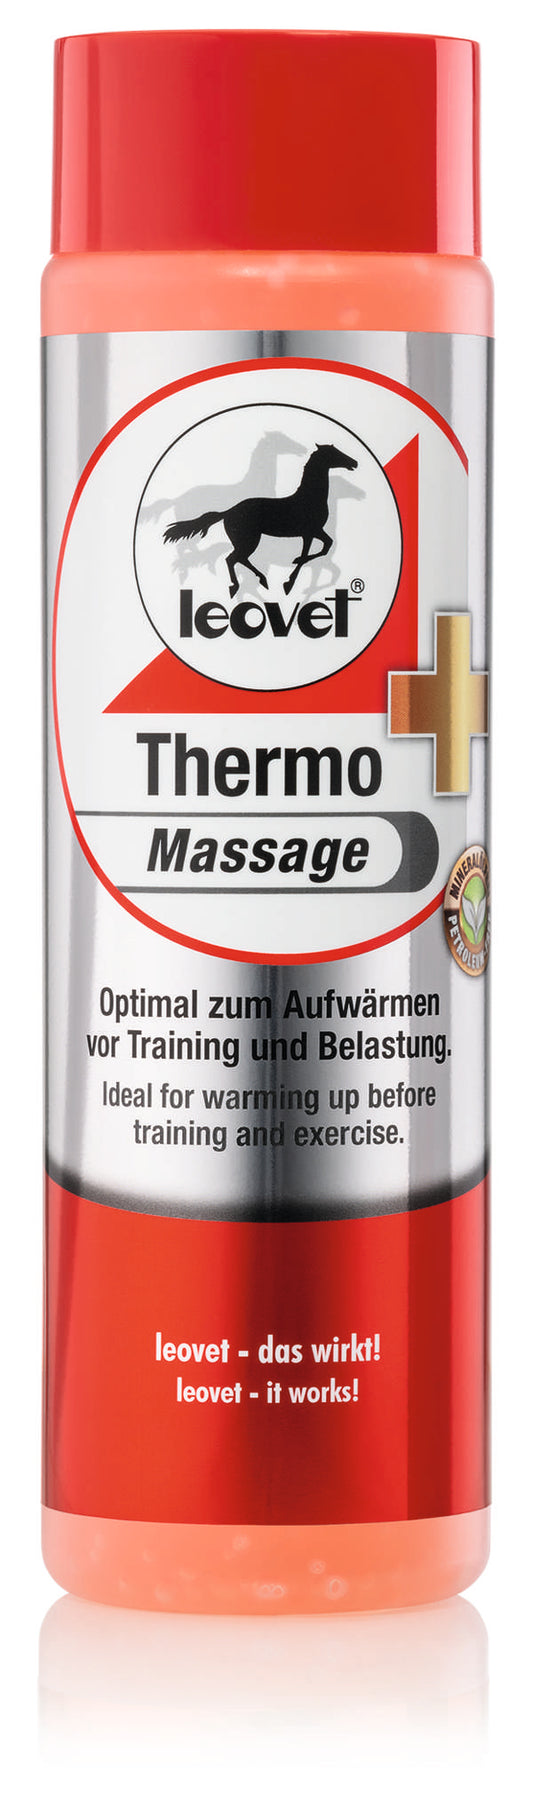 Leovet Thermo-Massage 500ml